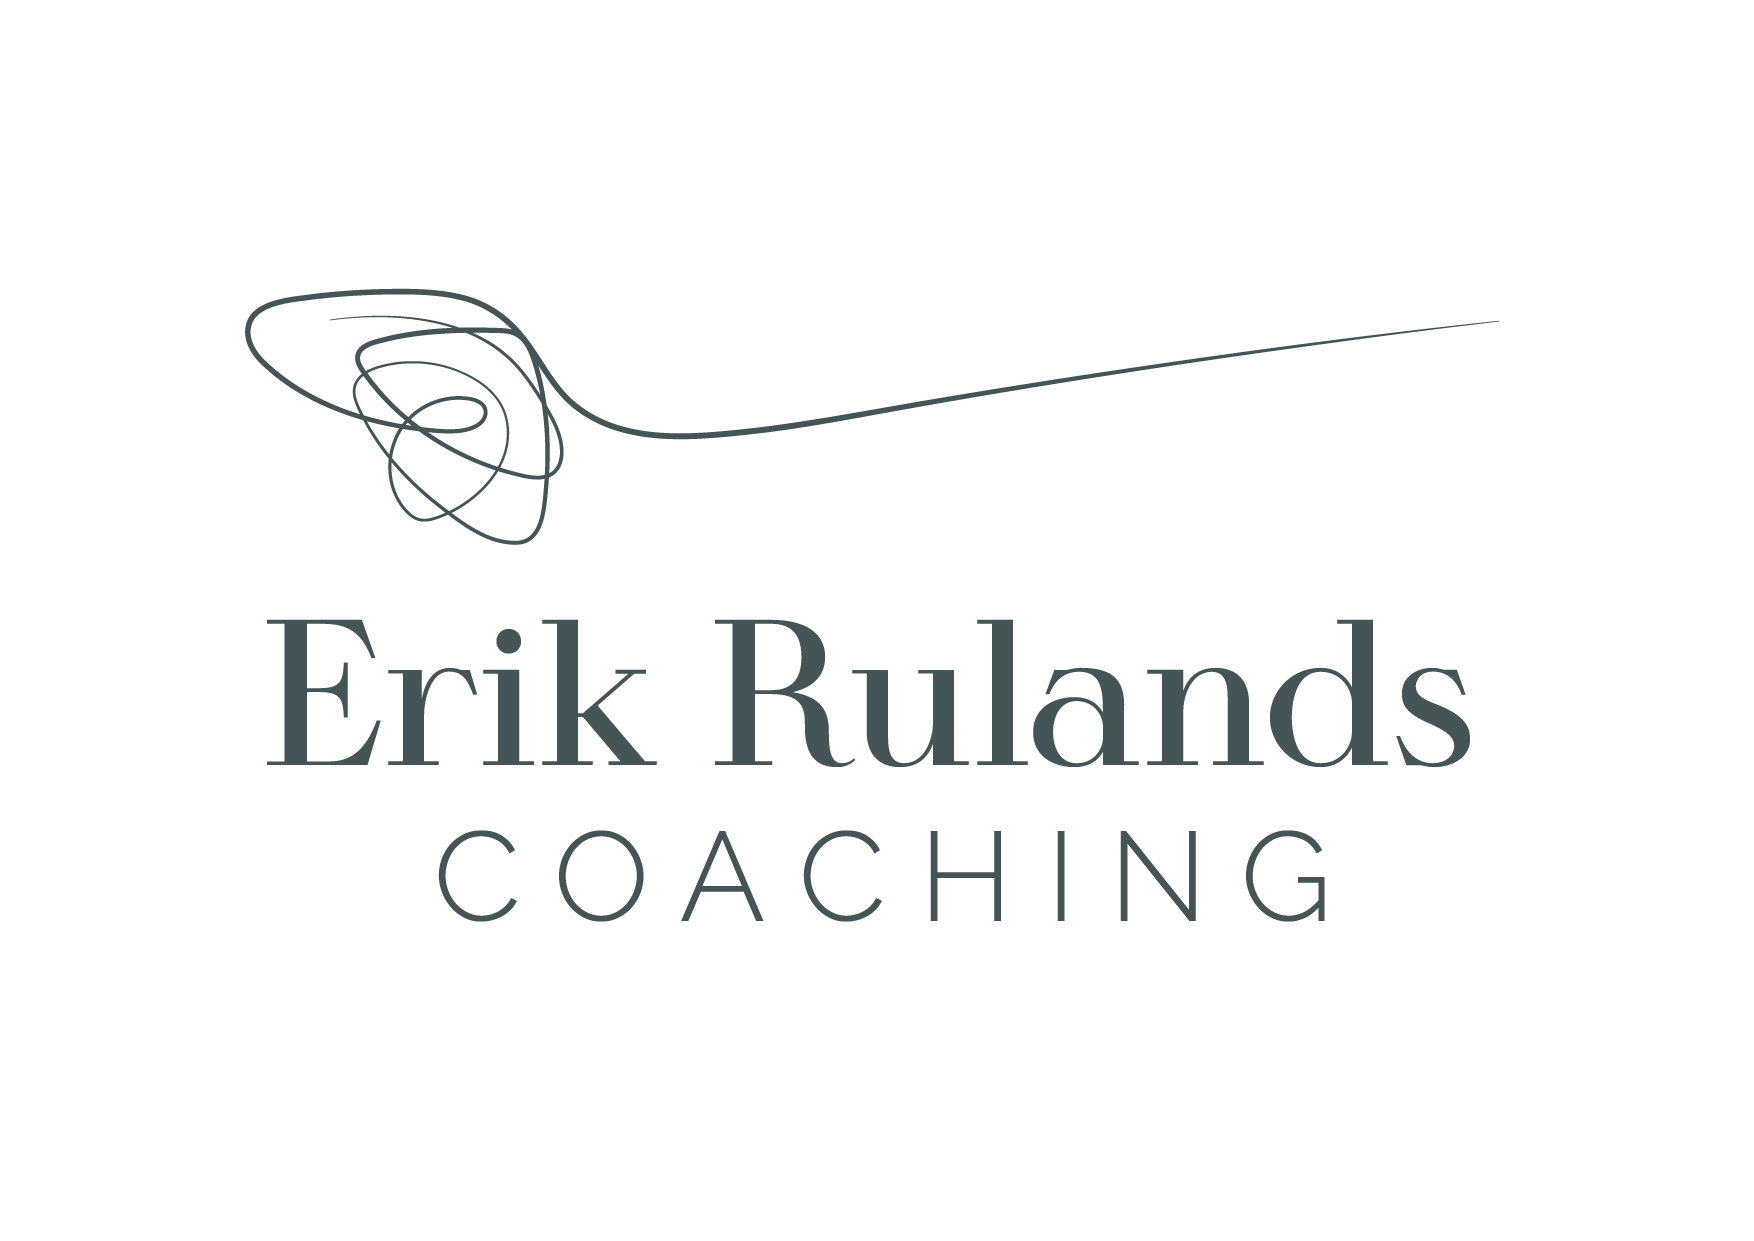 Finde Arbeit, die zu DIR passt – Erik Rulands Coaching